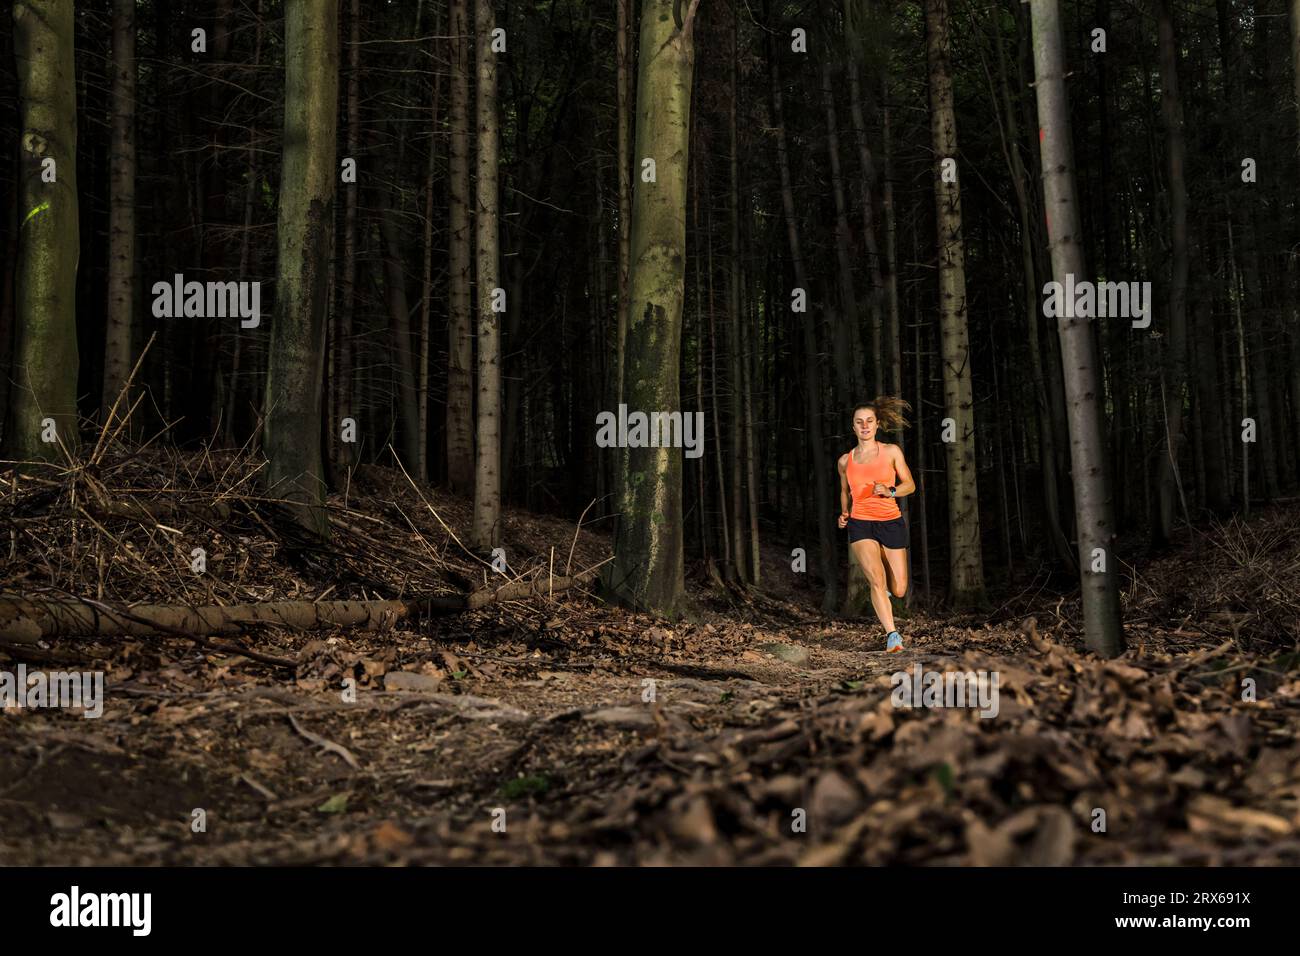 femme sportive dévouée qui court au milieu des troncs d'arbres dans la forêt Banque D'Images